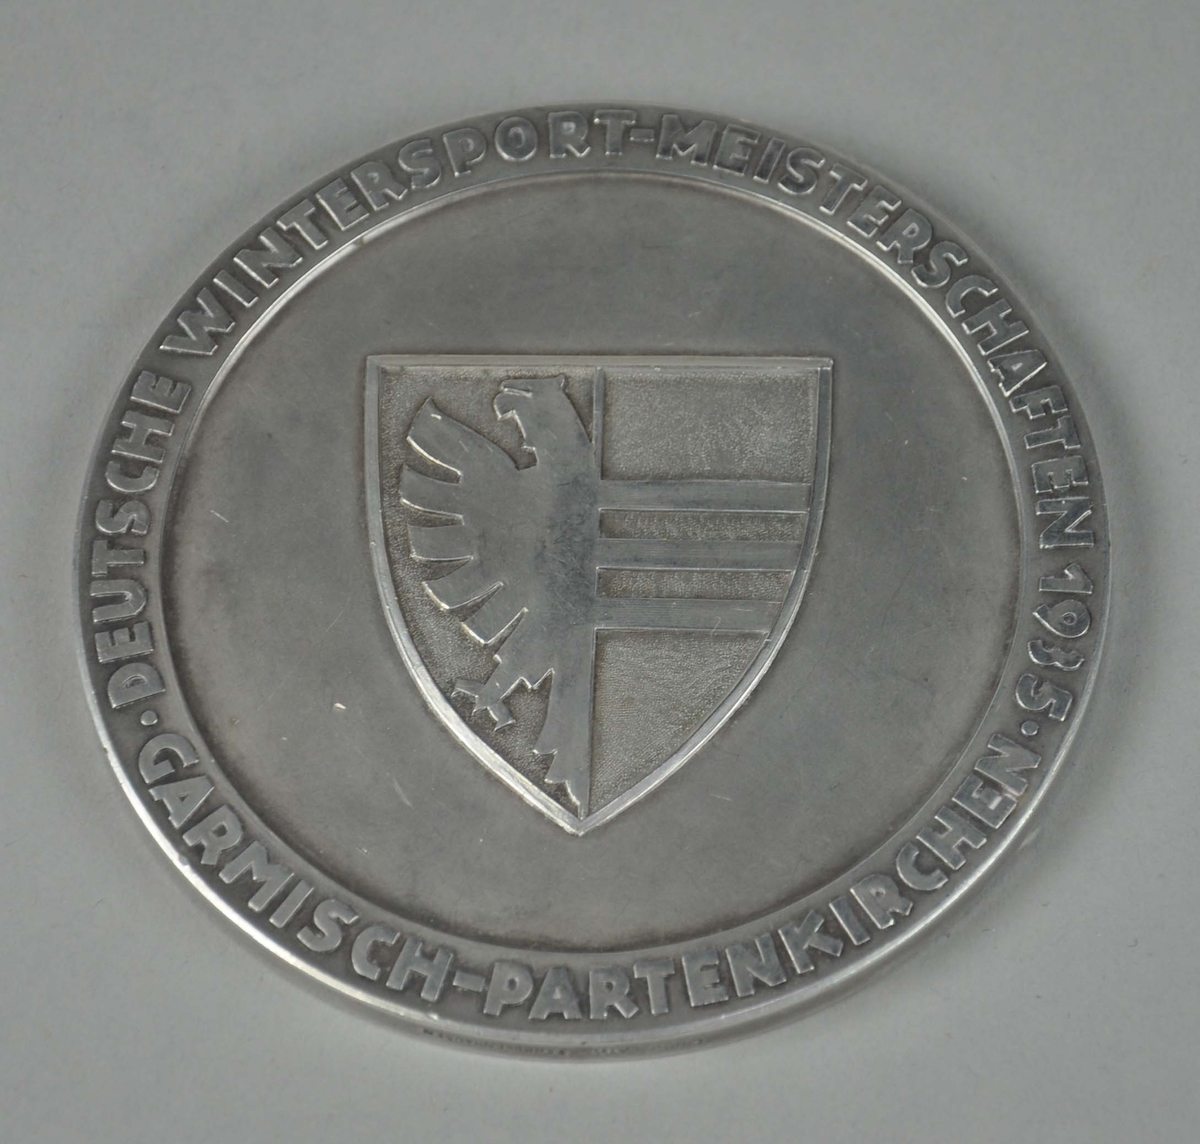 Rund sølvmedalje med byvåpenet for Garmisch-Partenkirchen i midten og tekst rundt kanten. På baksiden hakekors med tekst rundt kanten.